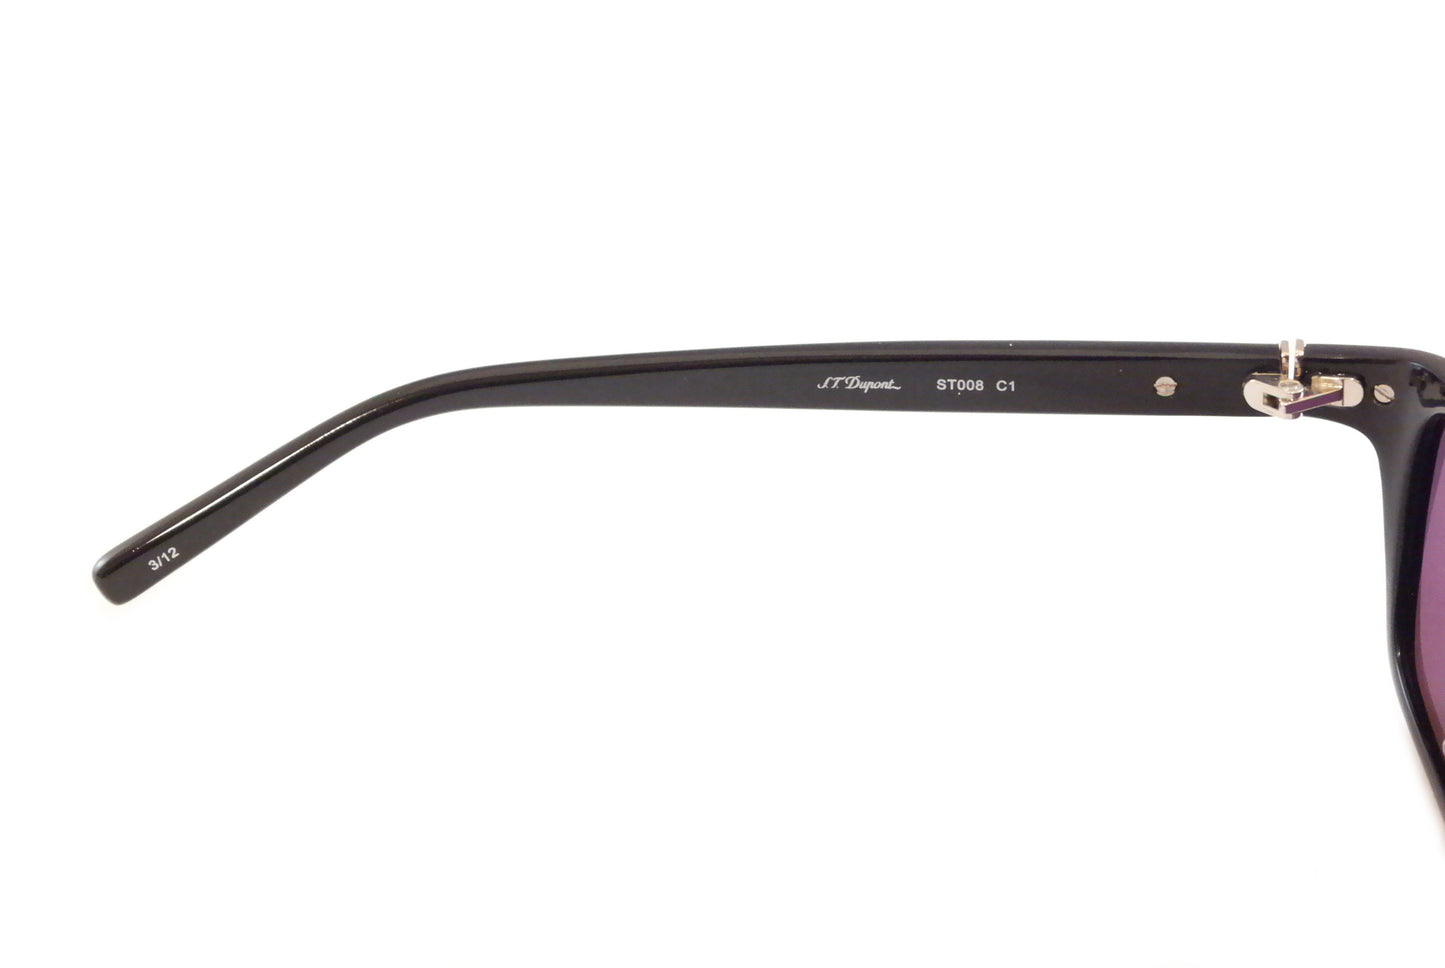 S.T. Dupont Sunglasses ST008 Plastic Italy 100% UV Category 3 Lenses 56-18-140 - Frame Bay